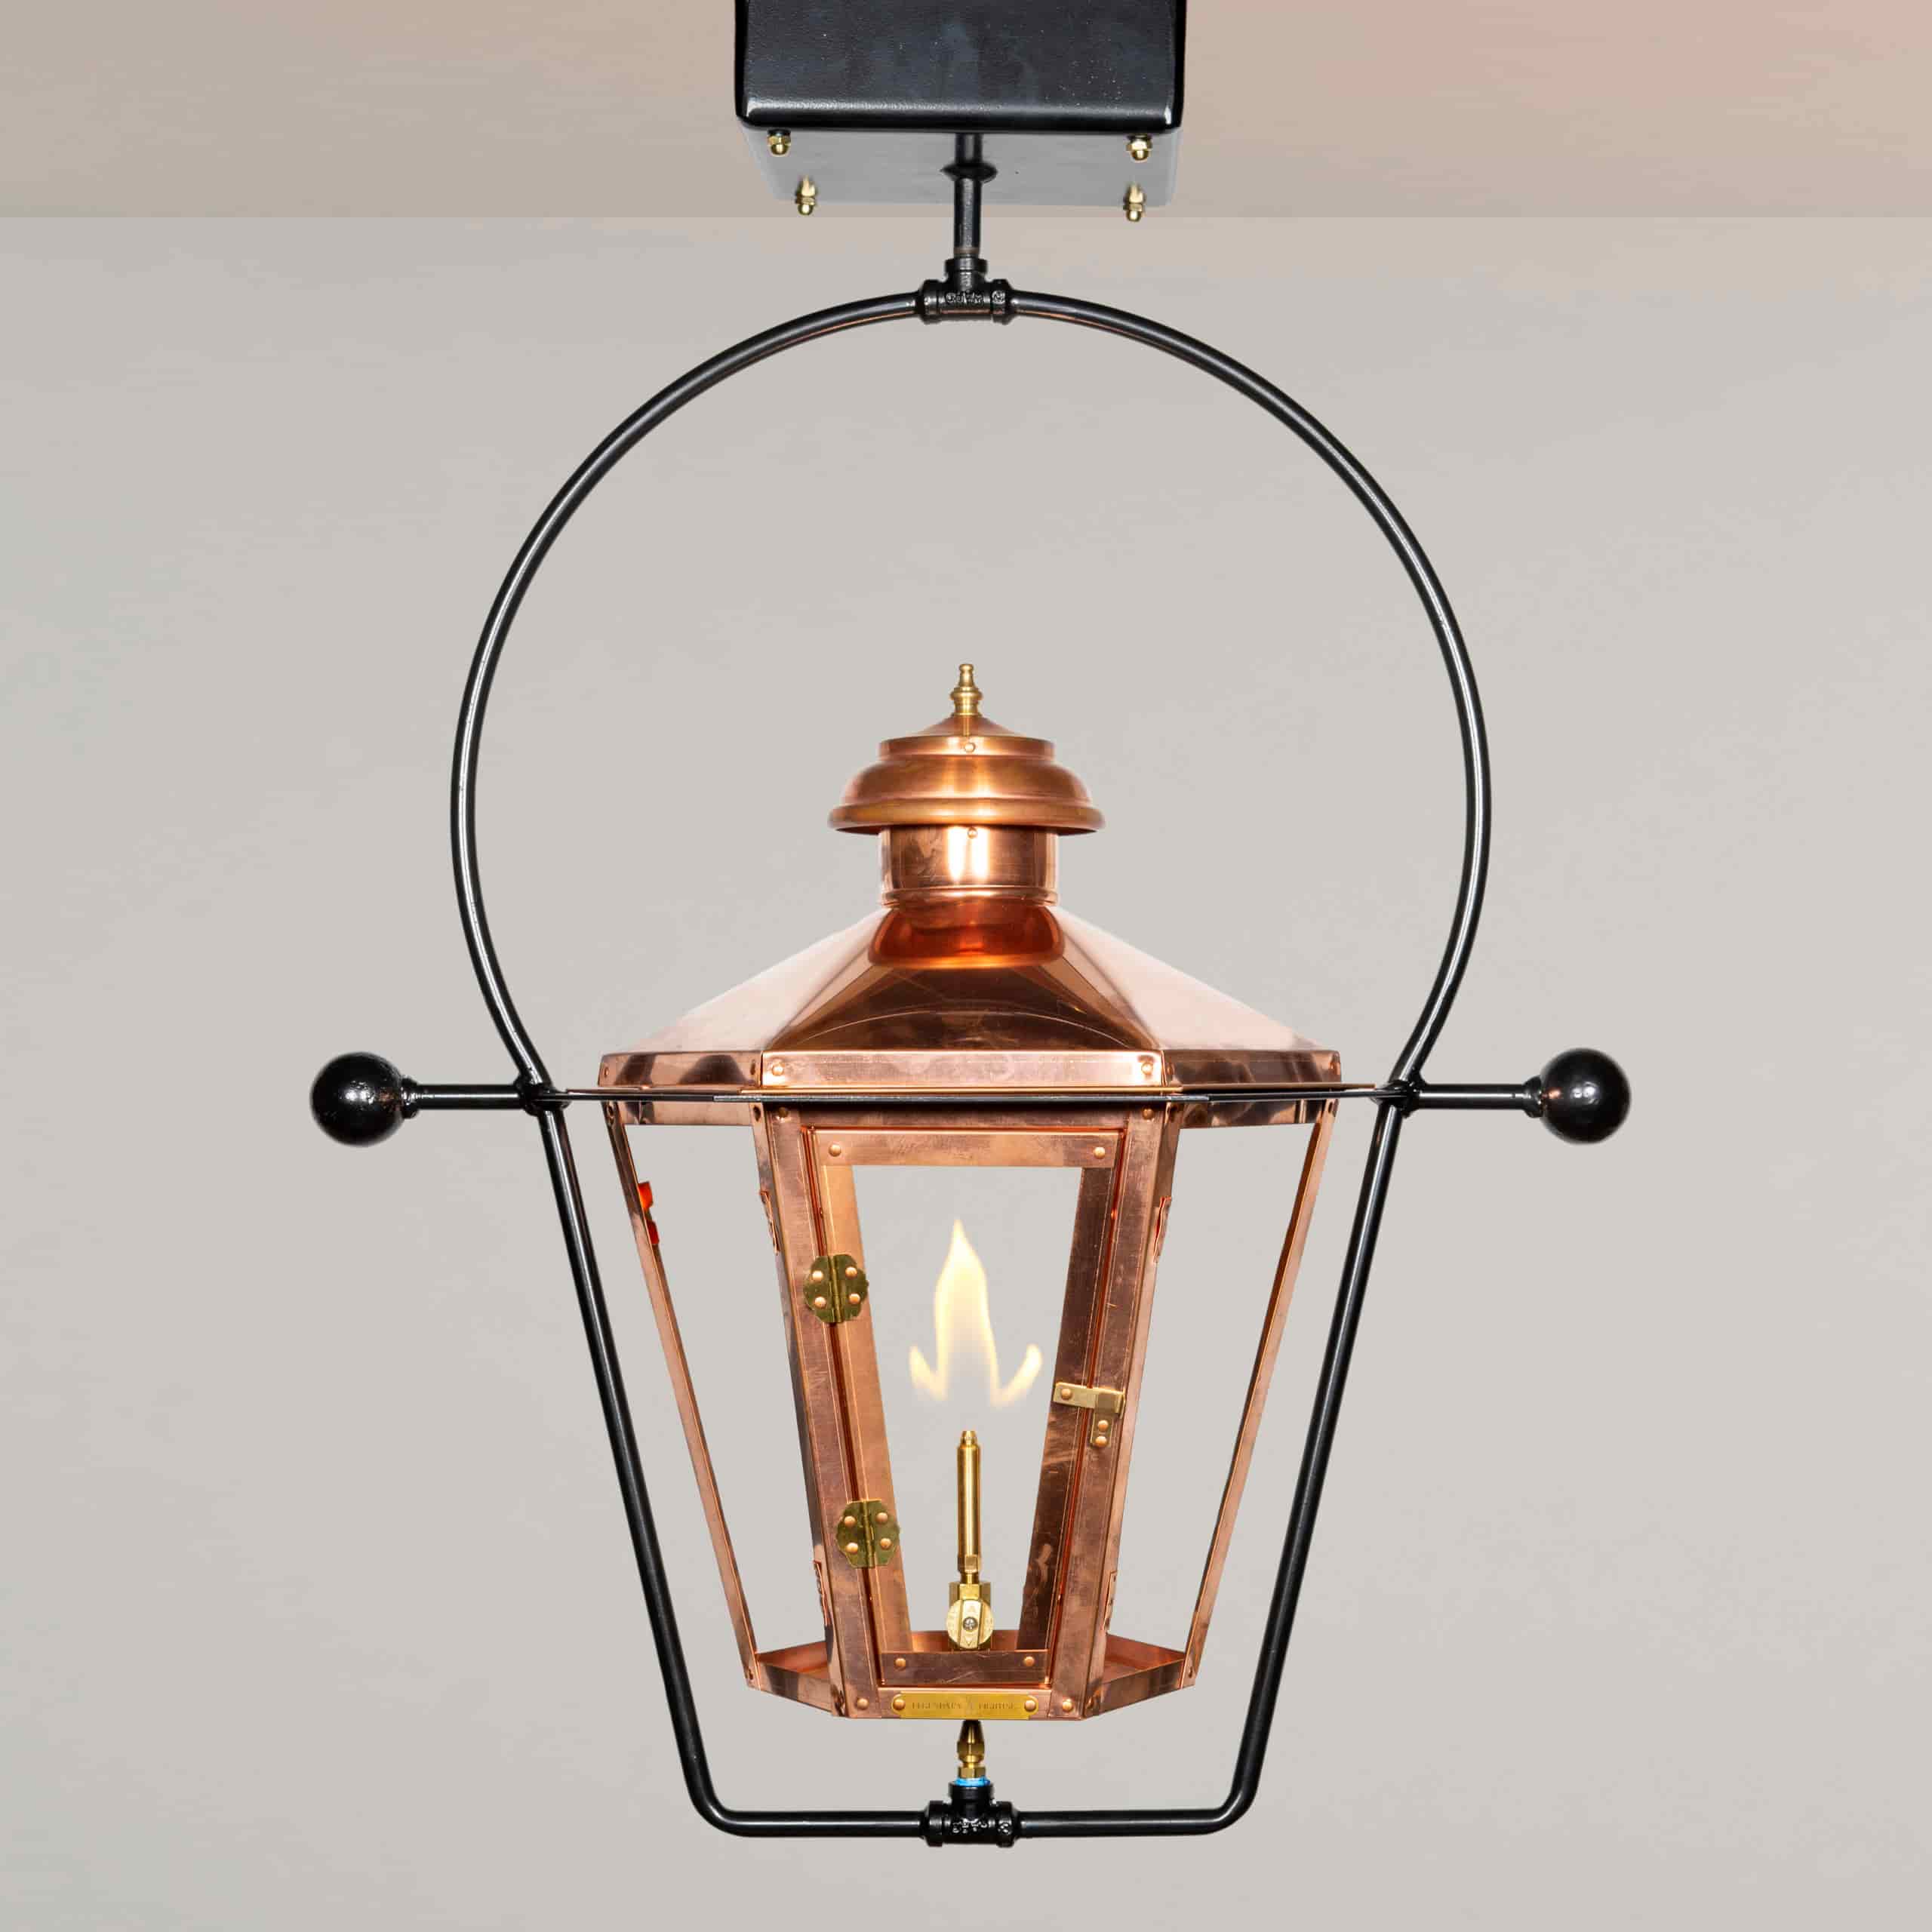 The Athena Copper Lamp